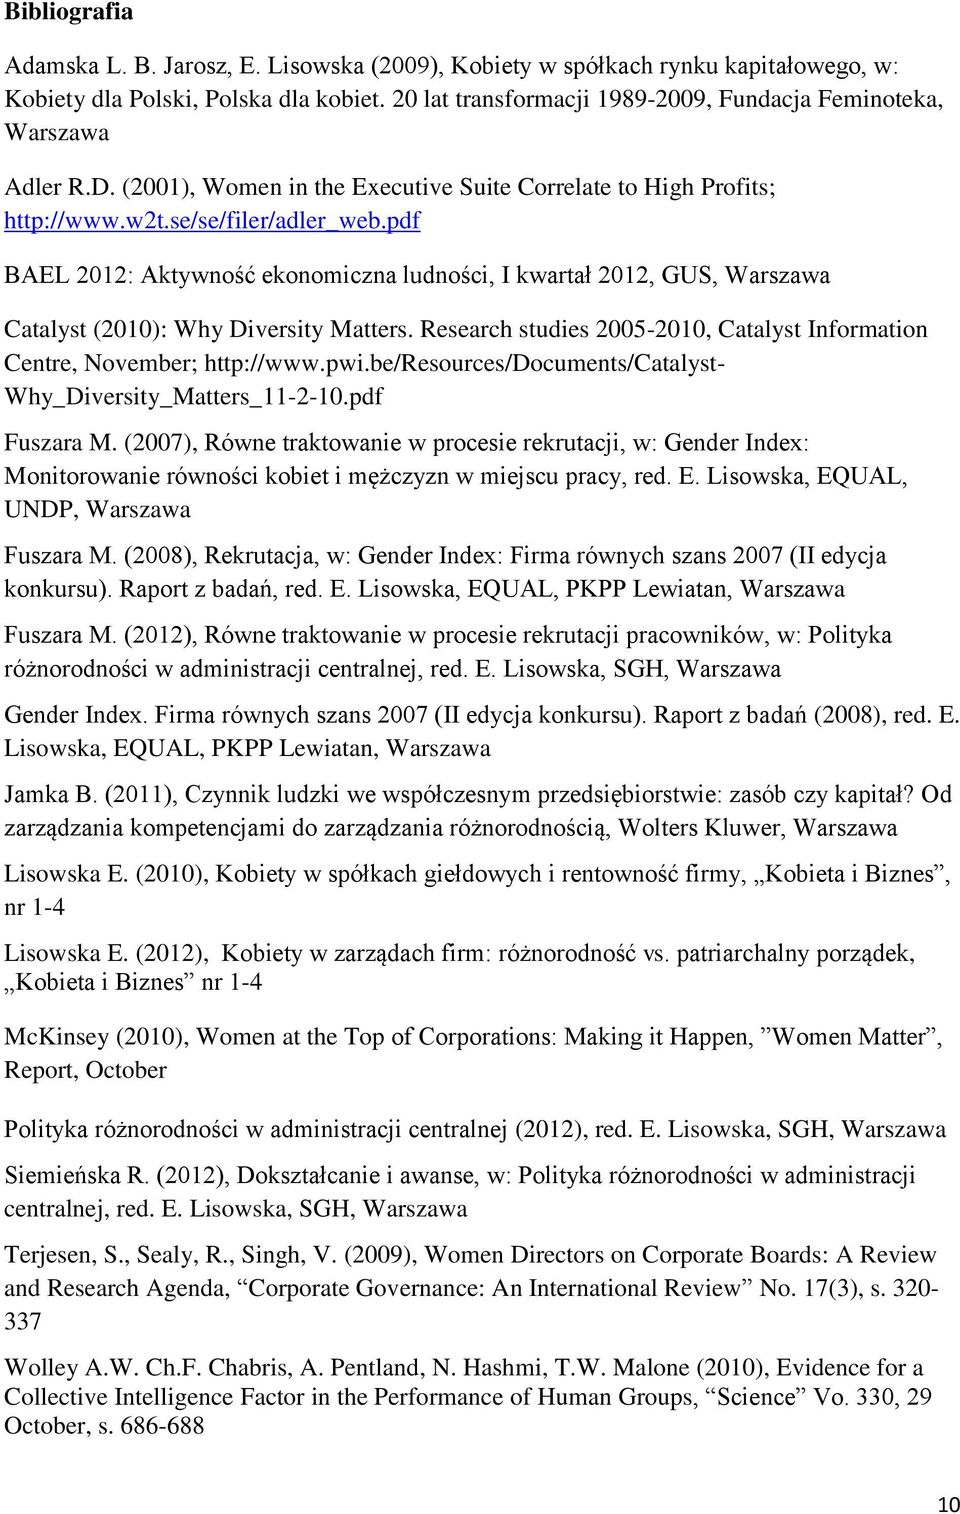 pdf BAEL 2012: Aktywność ekonomiczna ludności, I kwartał 2012, GUS, Warszawa Catalyst (2010): Why Diversity Matters. Research studies 2005-2010, Catalyst Information Centre, November; http://www.pwi.